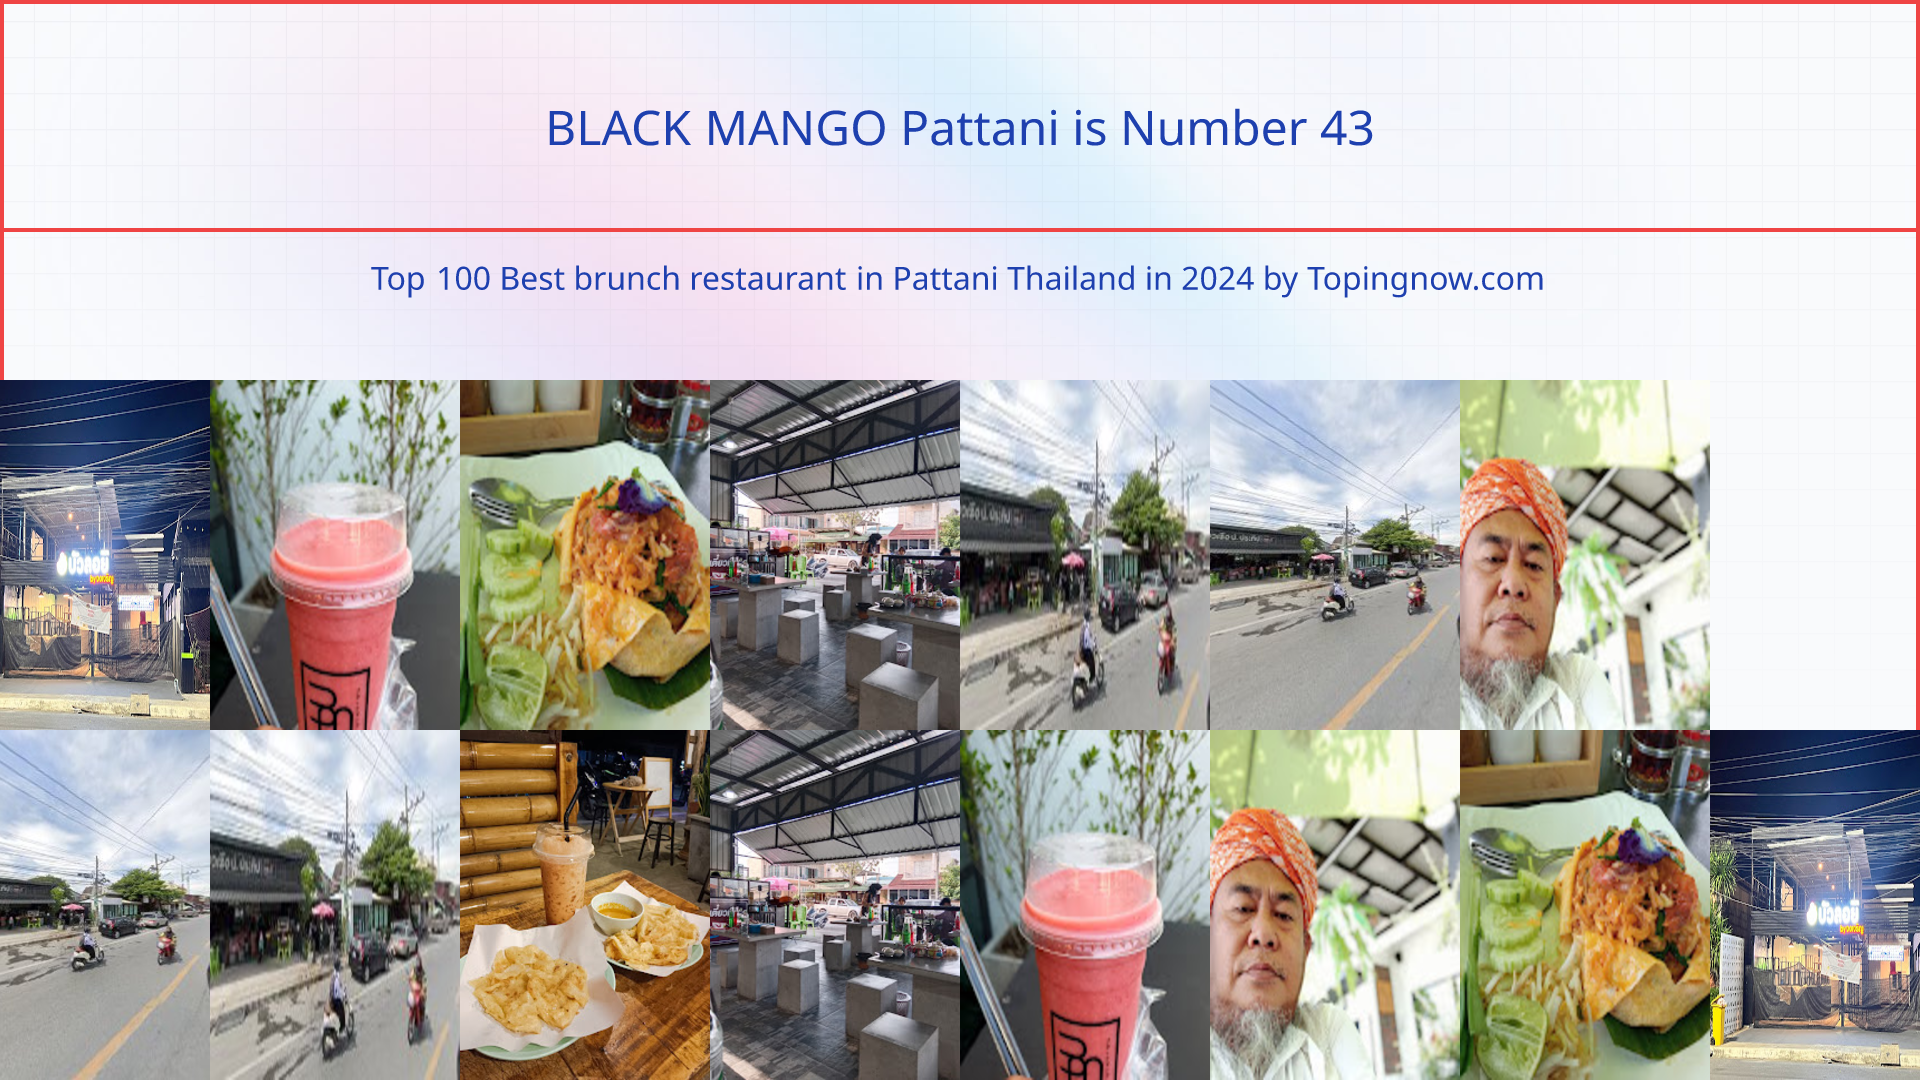 BLACK MANGO Pattani: Top 100 Best brunch restaurant in Pattani Thailand in 2024